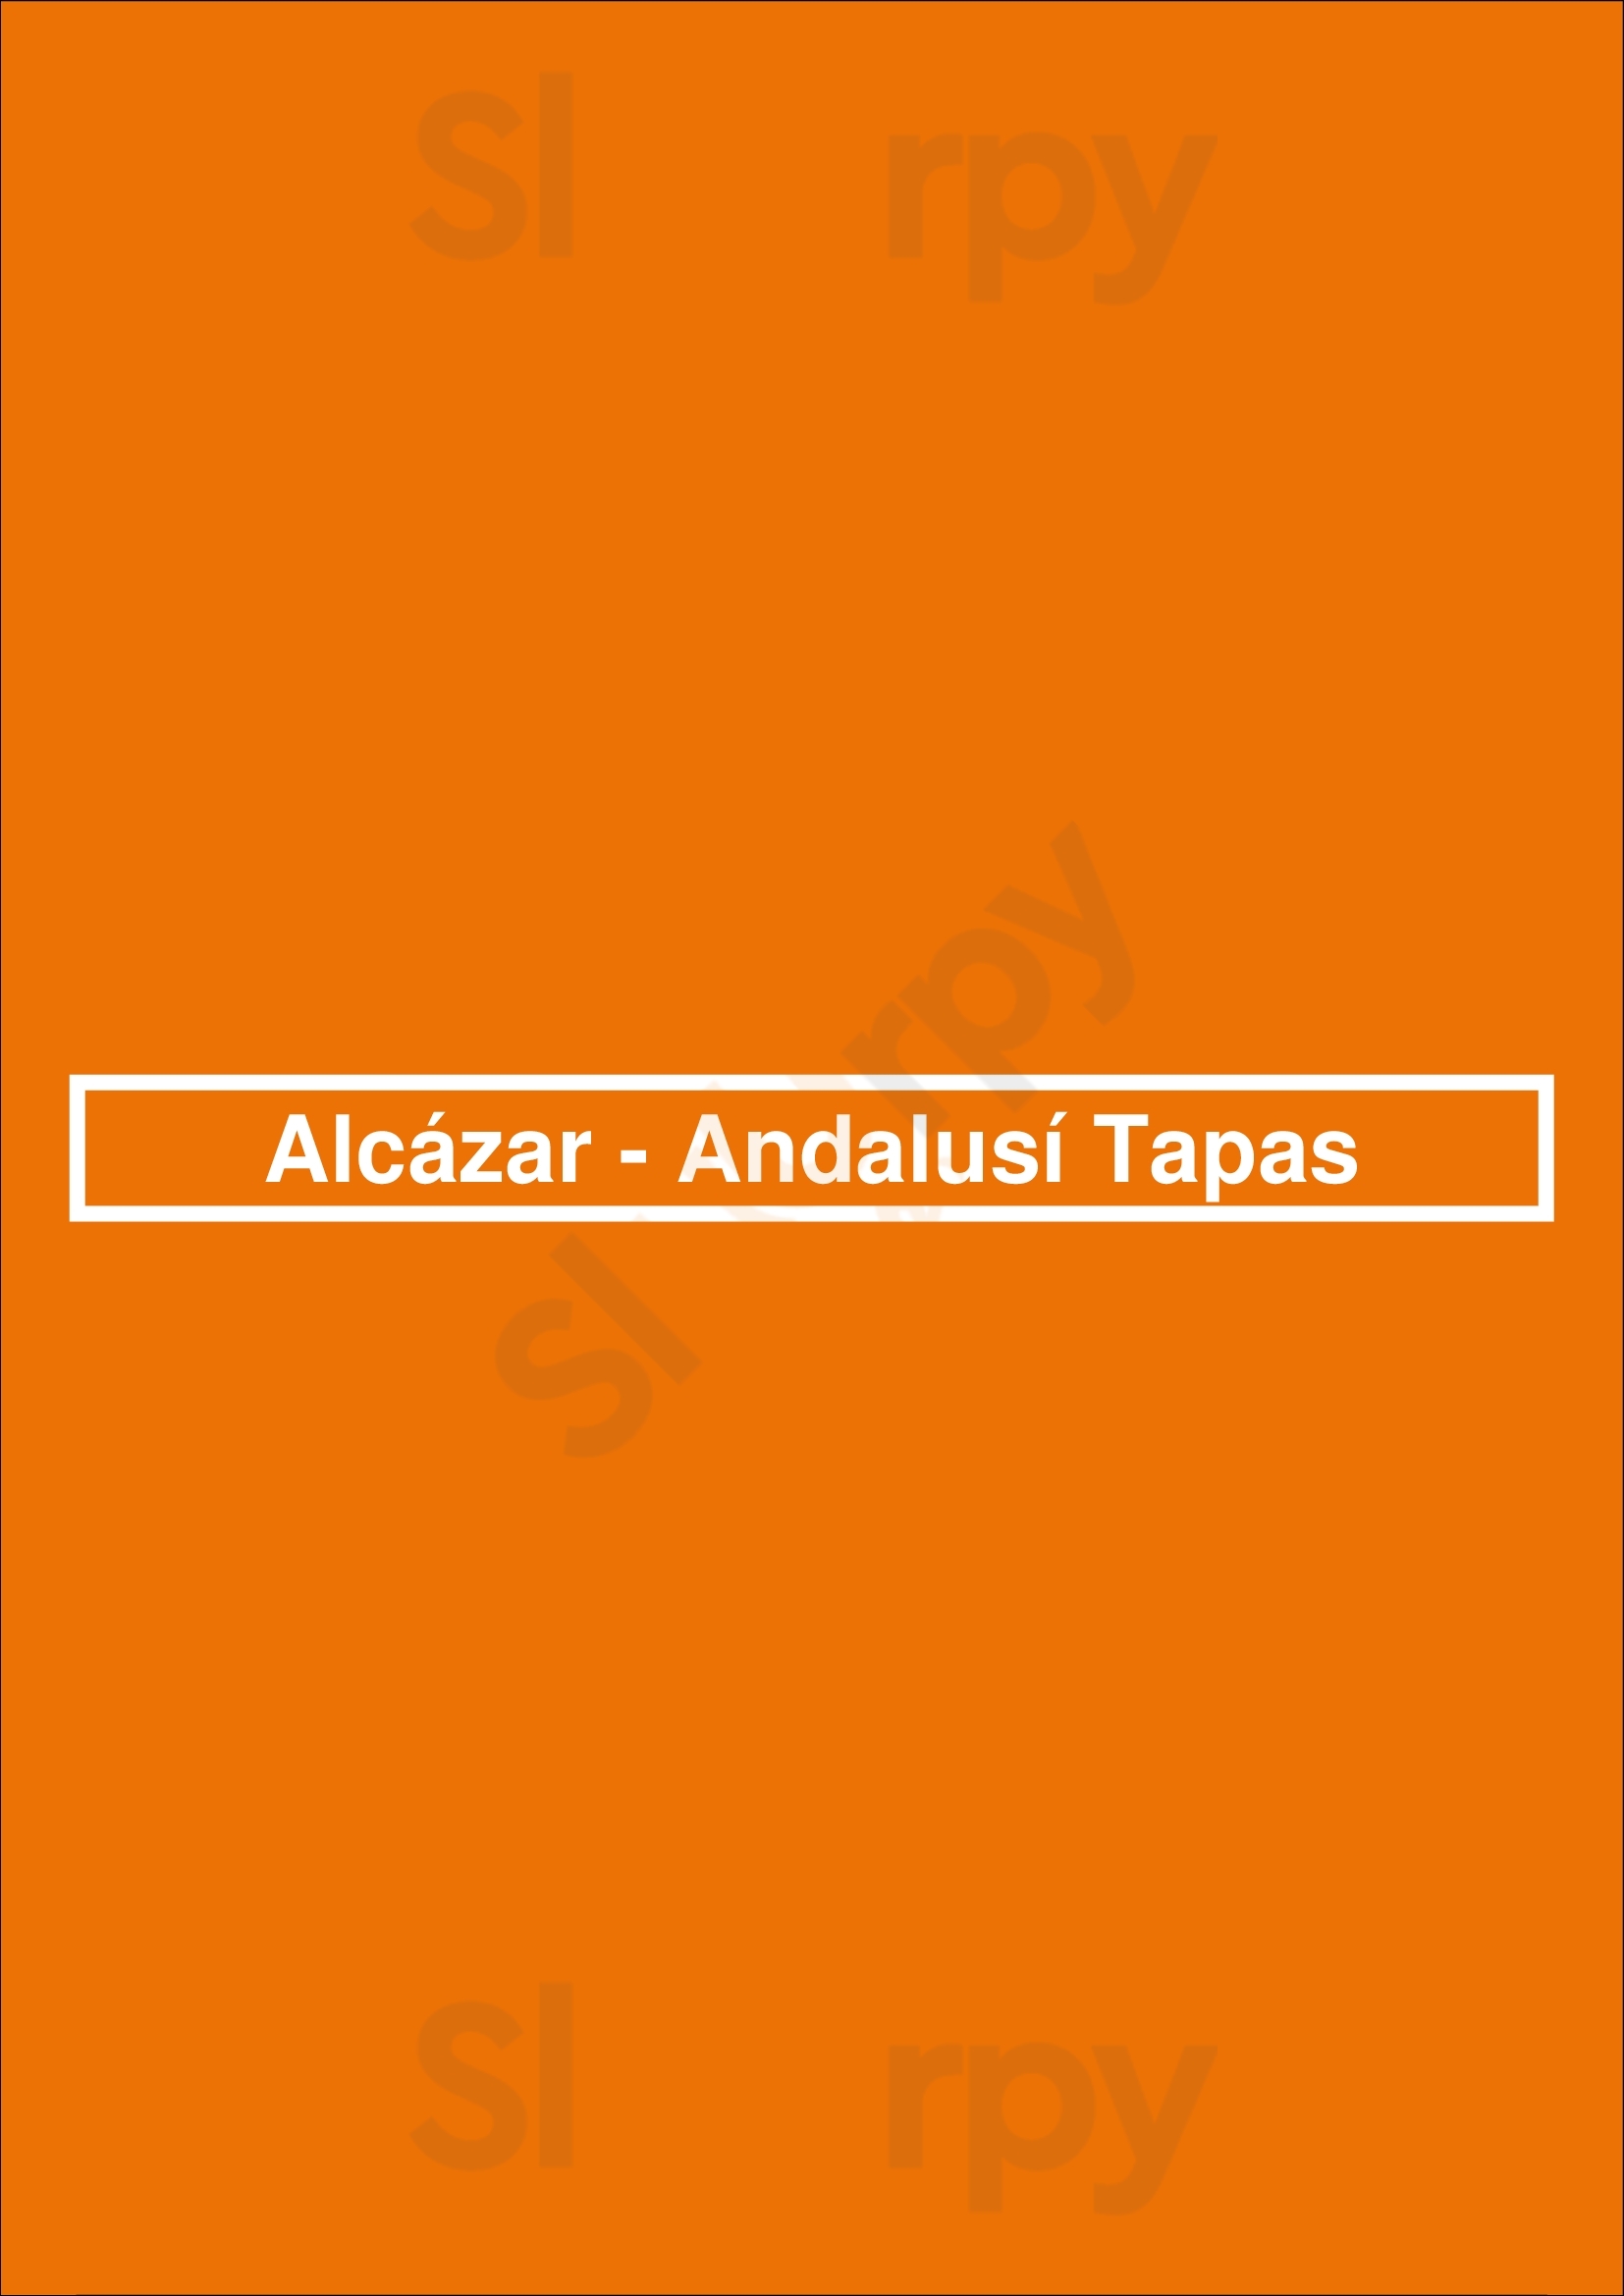 Alcázar Andalusí Tapas Sevilla Menu - 1